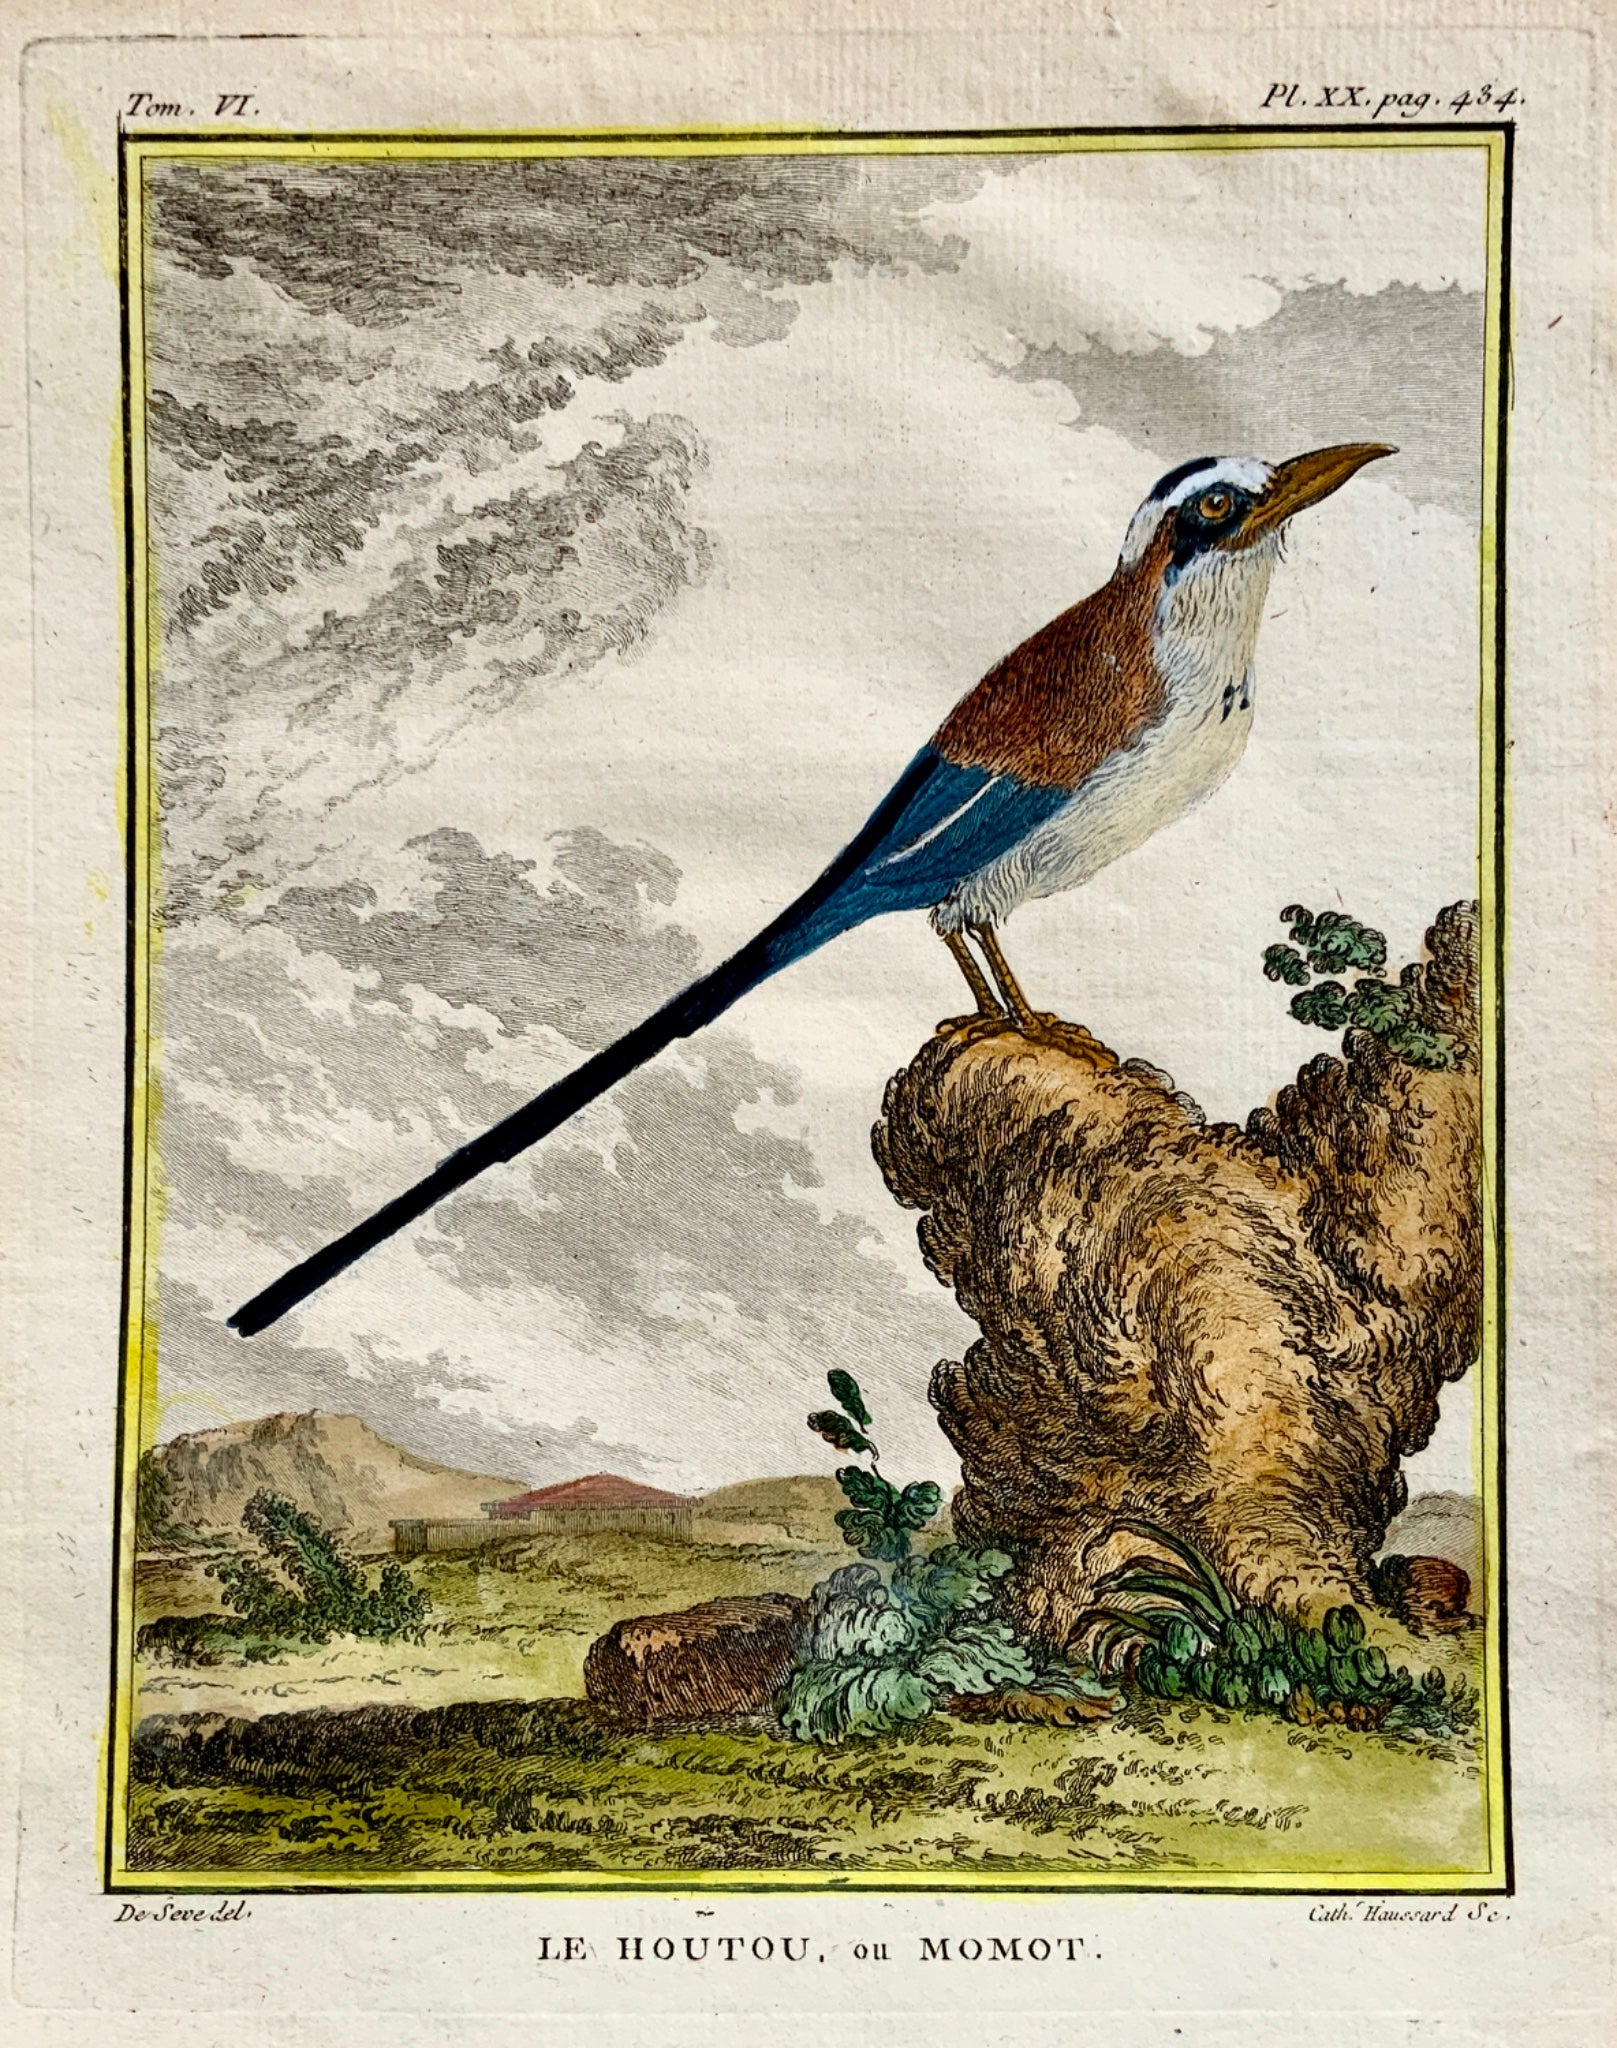 1779 Haussard after Jacques de Seve - Le Houtou ou Momot Bird- 4to engraving